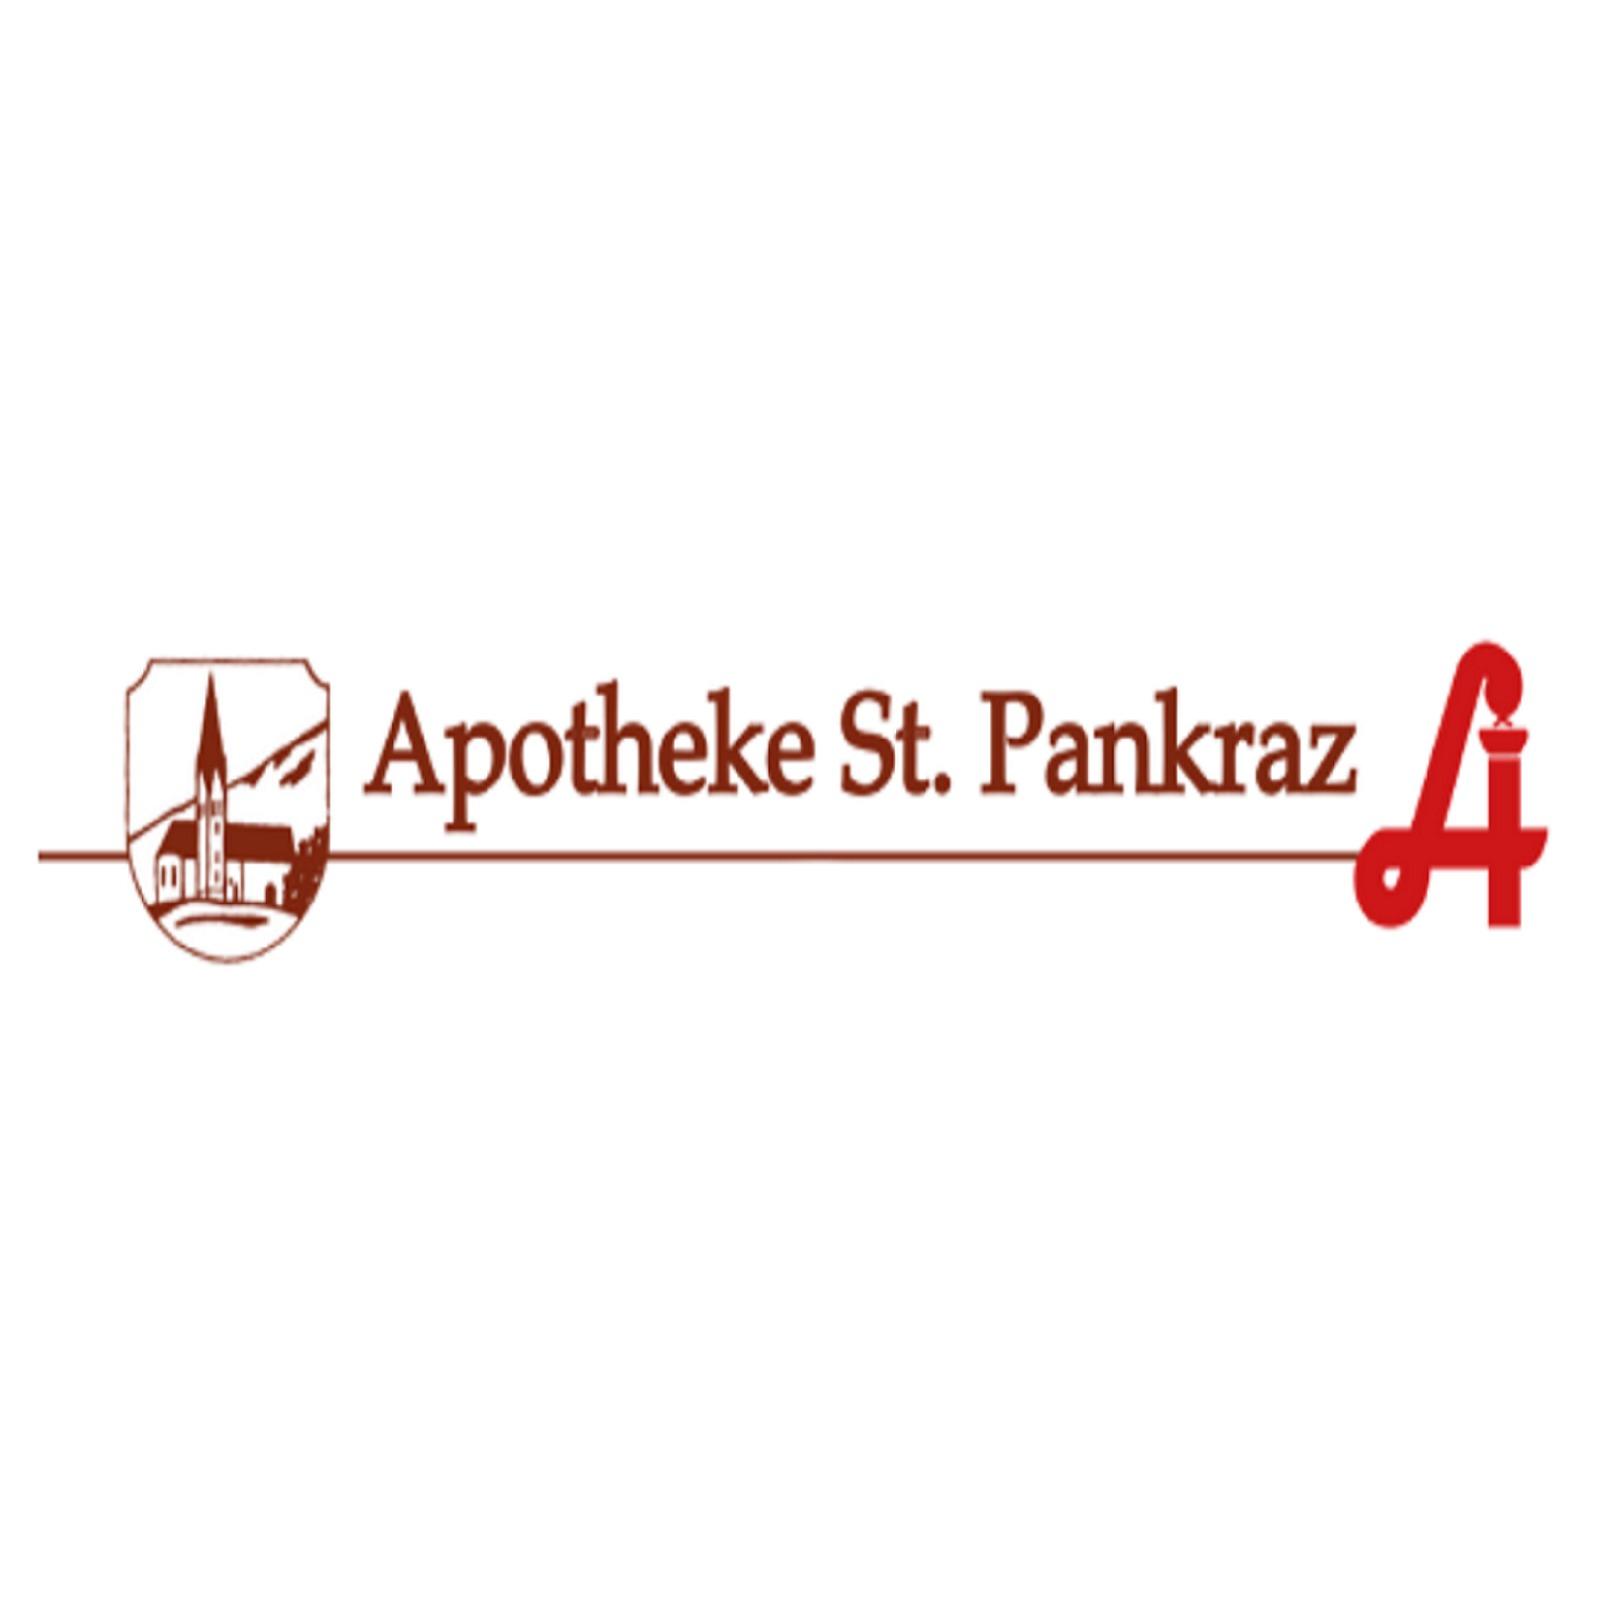 St Pankraz-Apotheke Logo